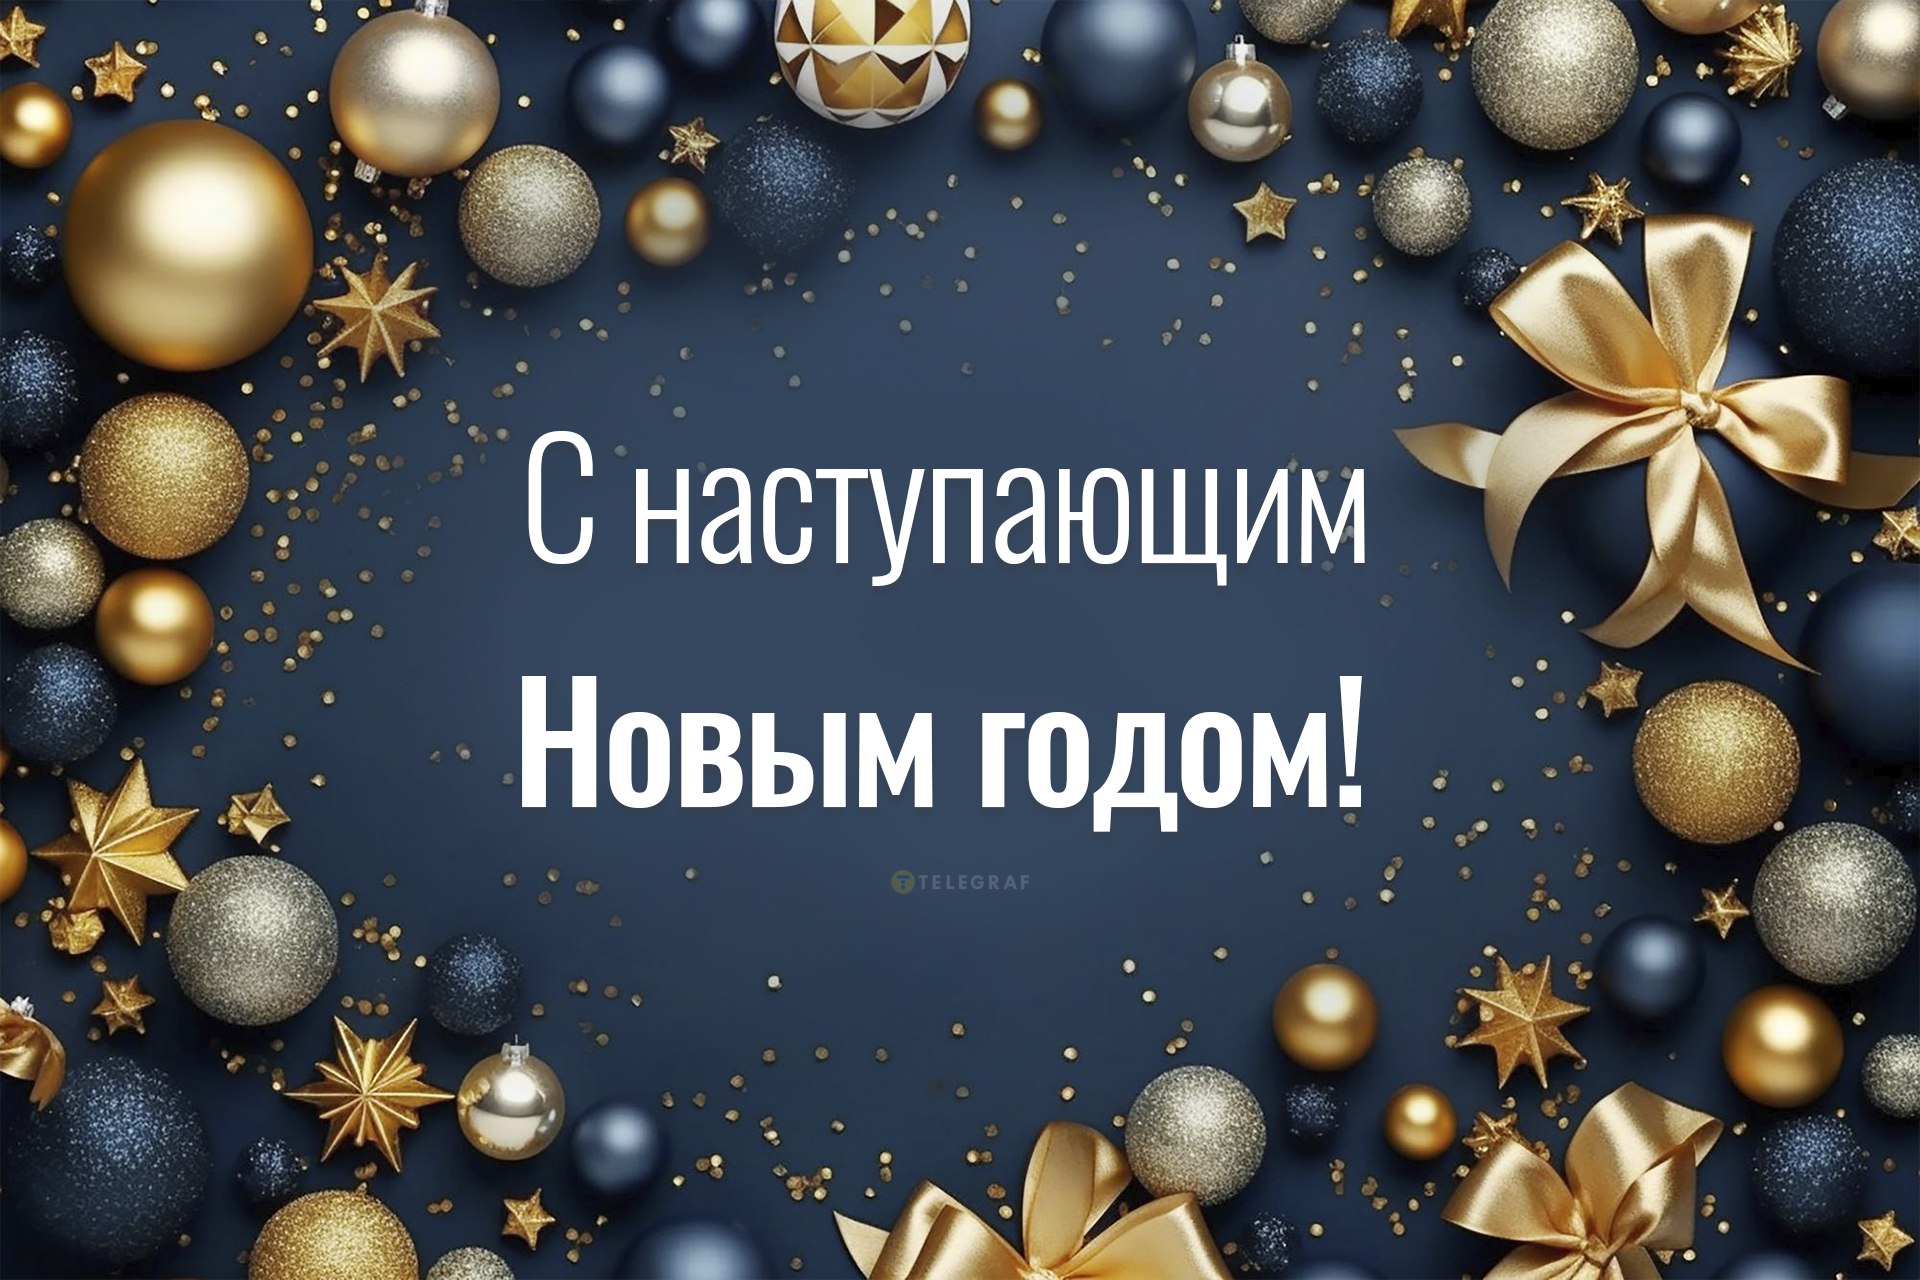 Поздравления С новым годом от kormstroytorg.ru